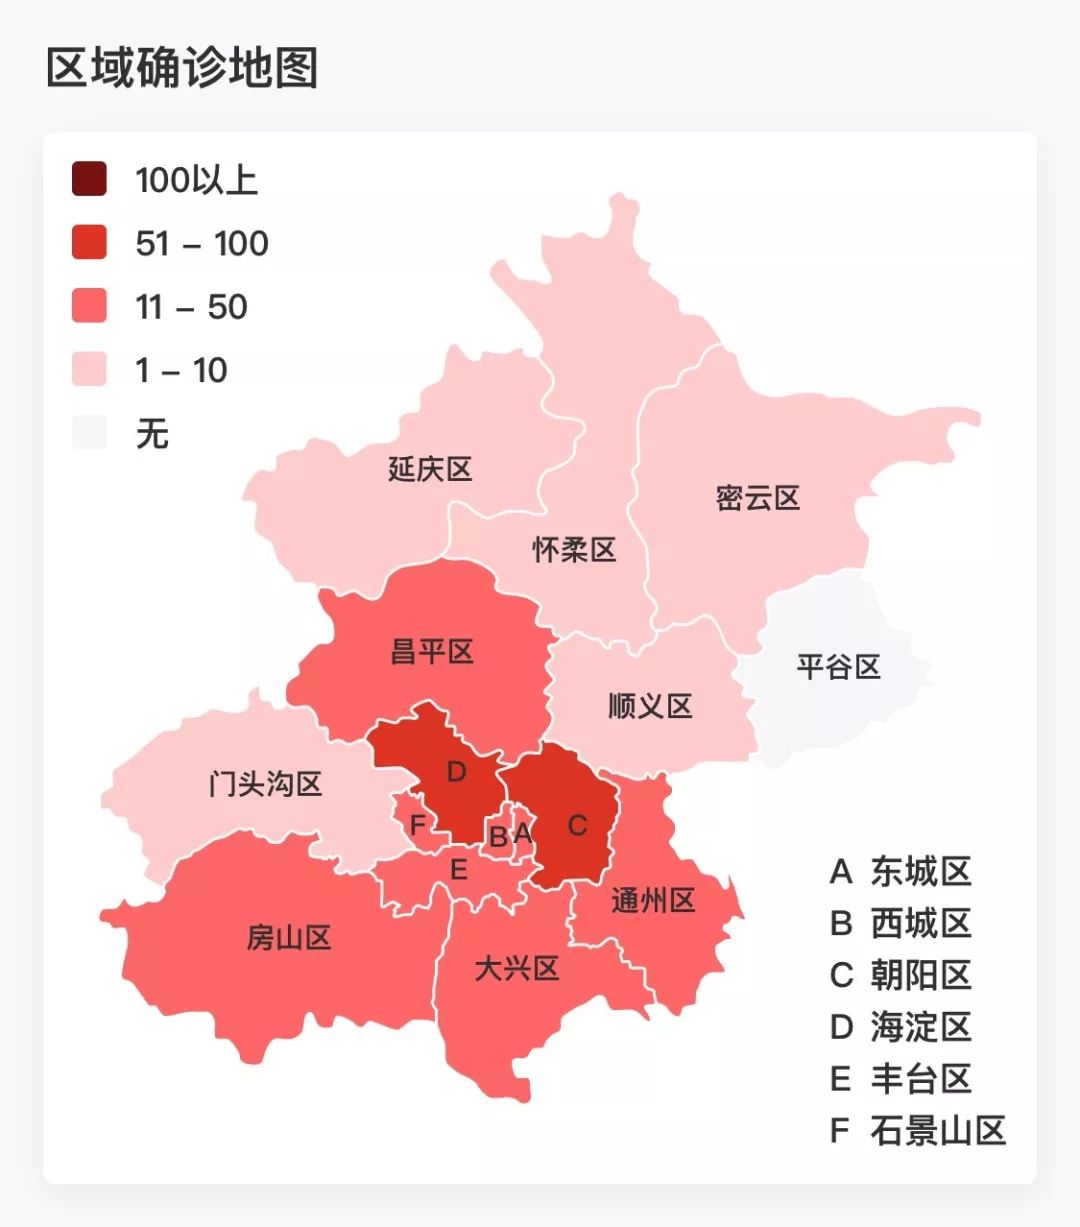 352例!北京疫情小区地图更新,新增10例,又多2个小区